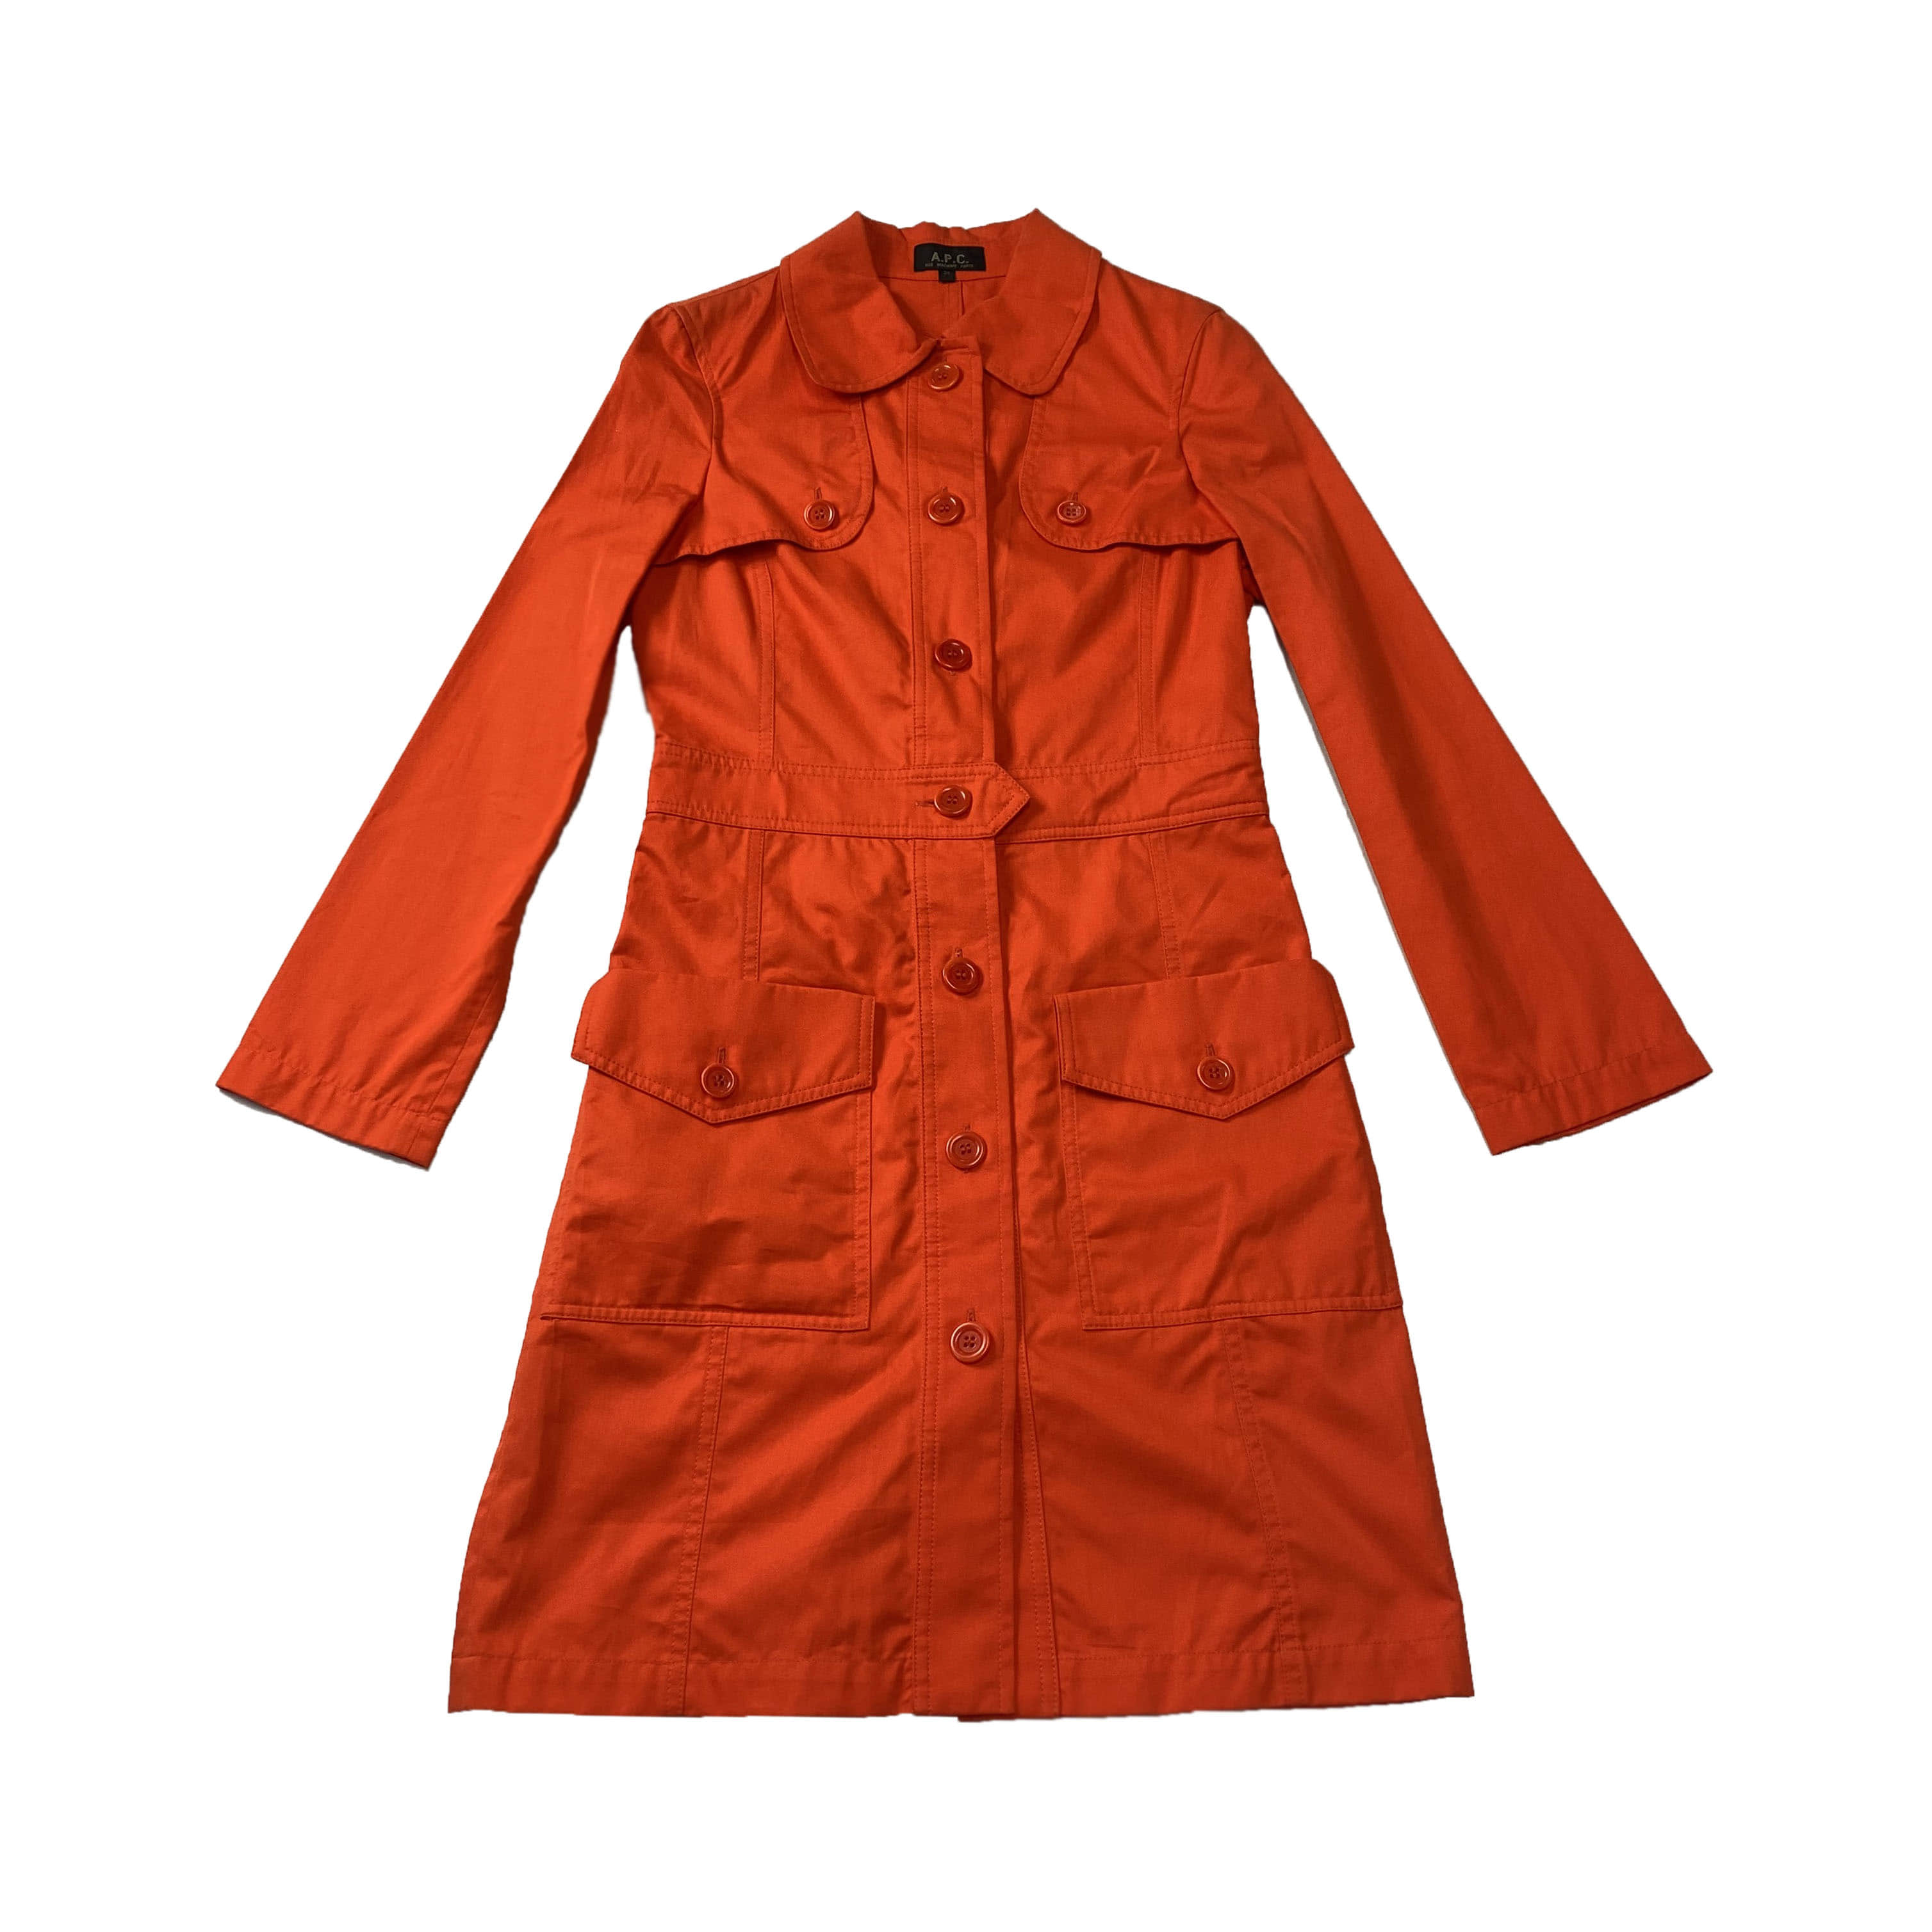 [A.P.C.] Orange Cotton Long Coat - Size 85 (S)